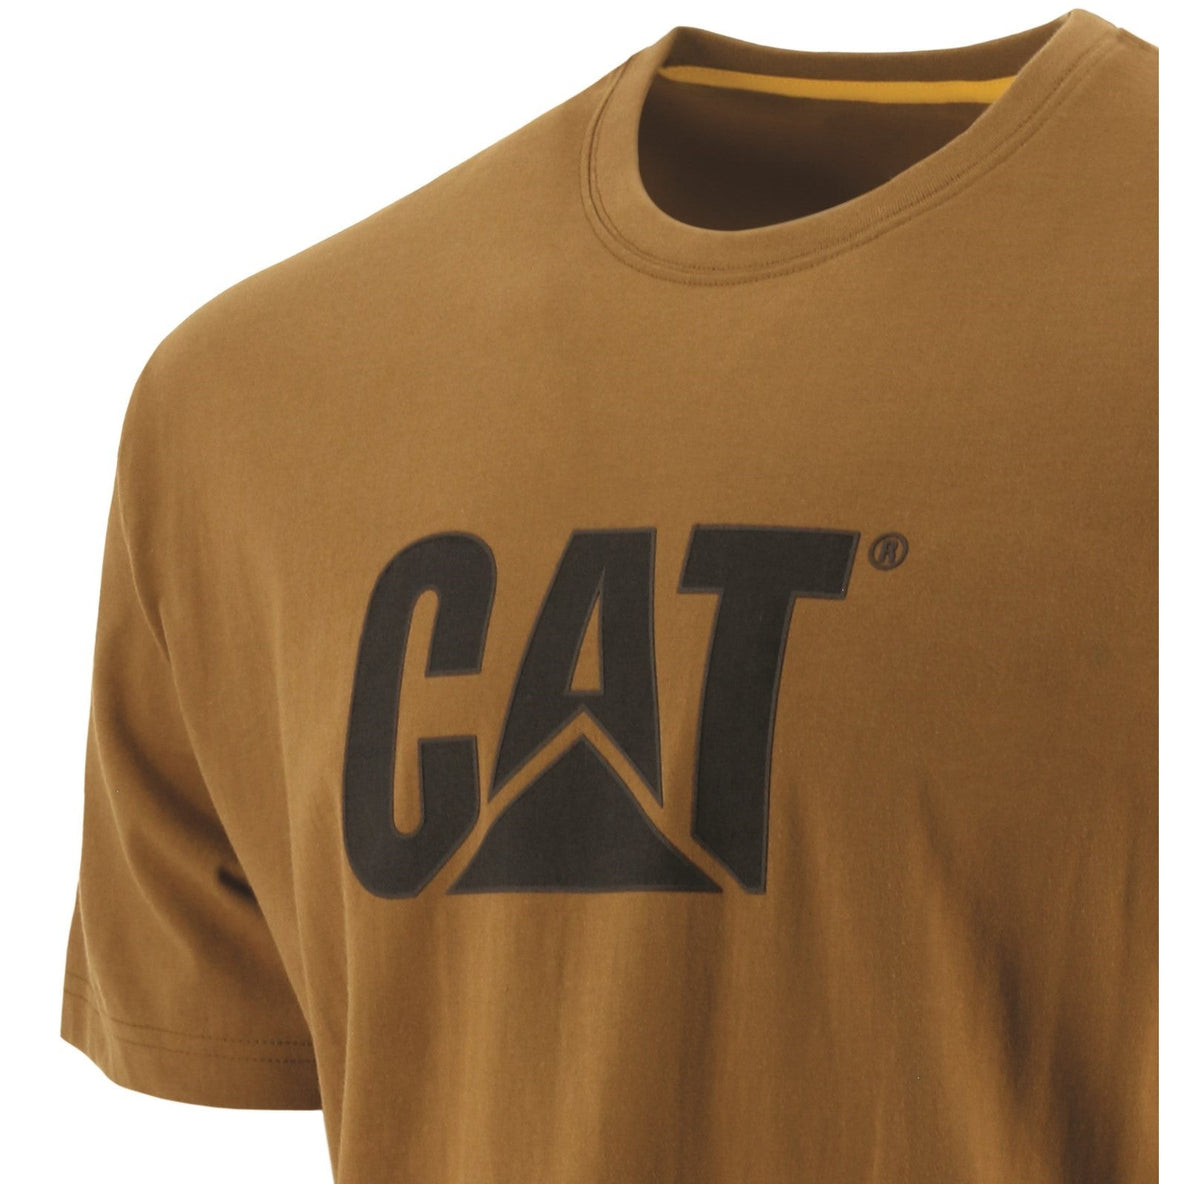 Caterpillar Trademark Logo T Shirt in Bronze 